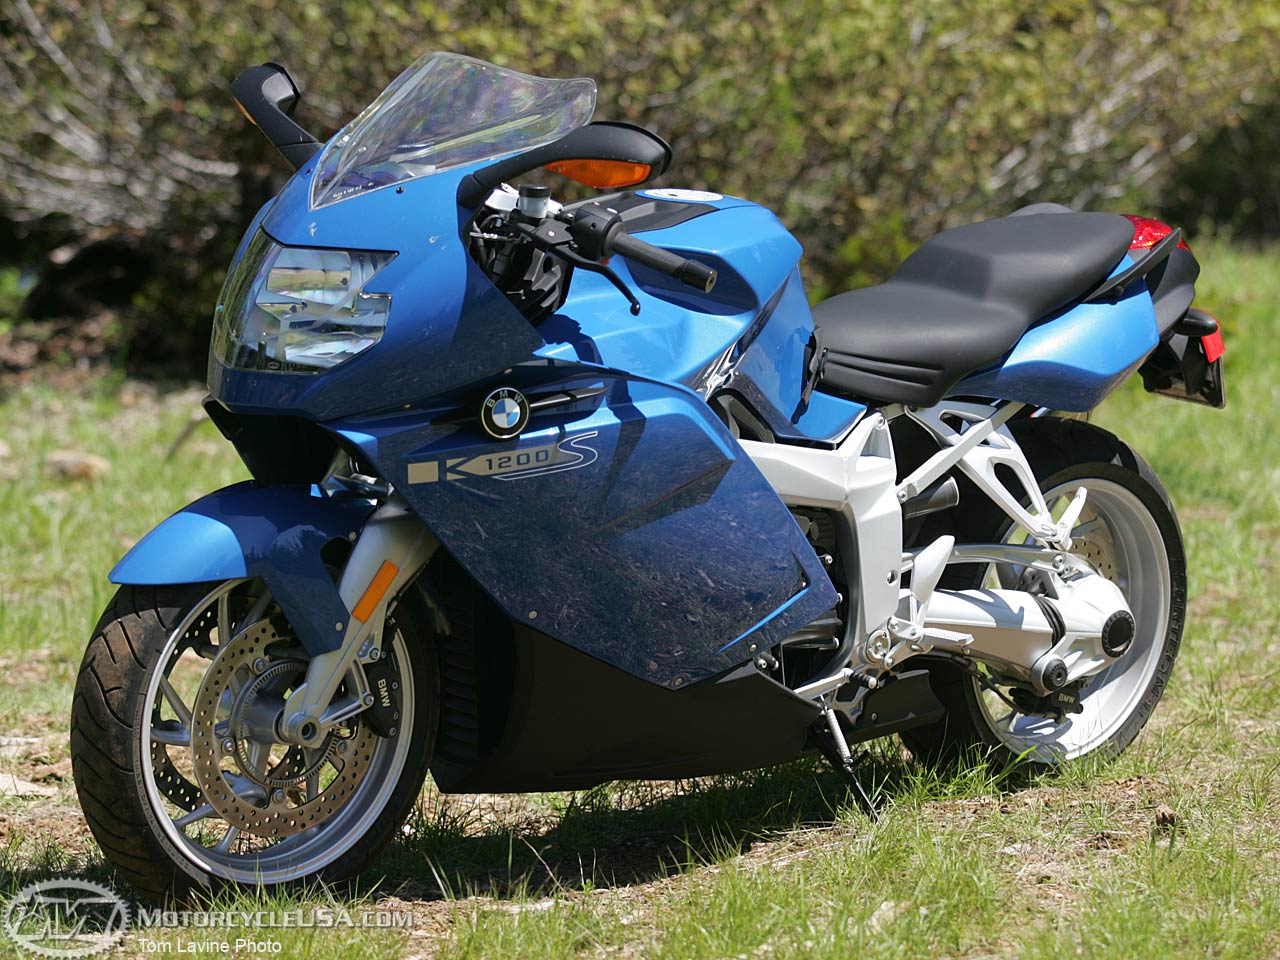 Мотоцикл bmw k1200s 2005 – излагаем в общих чертах